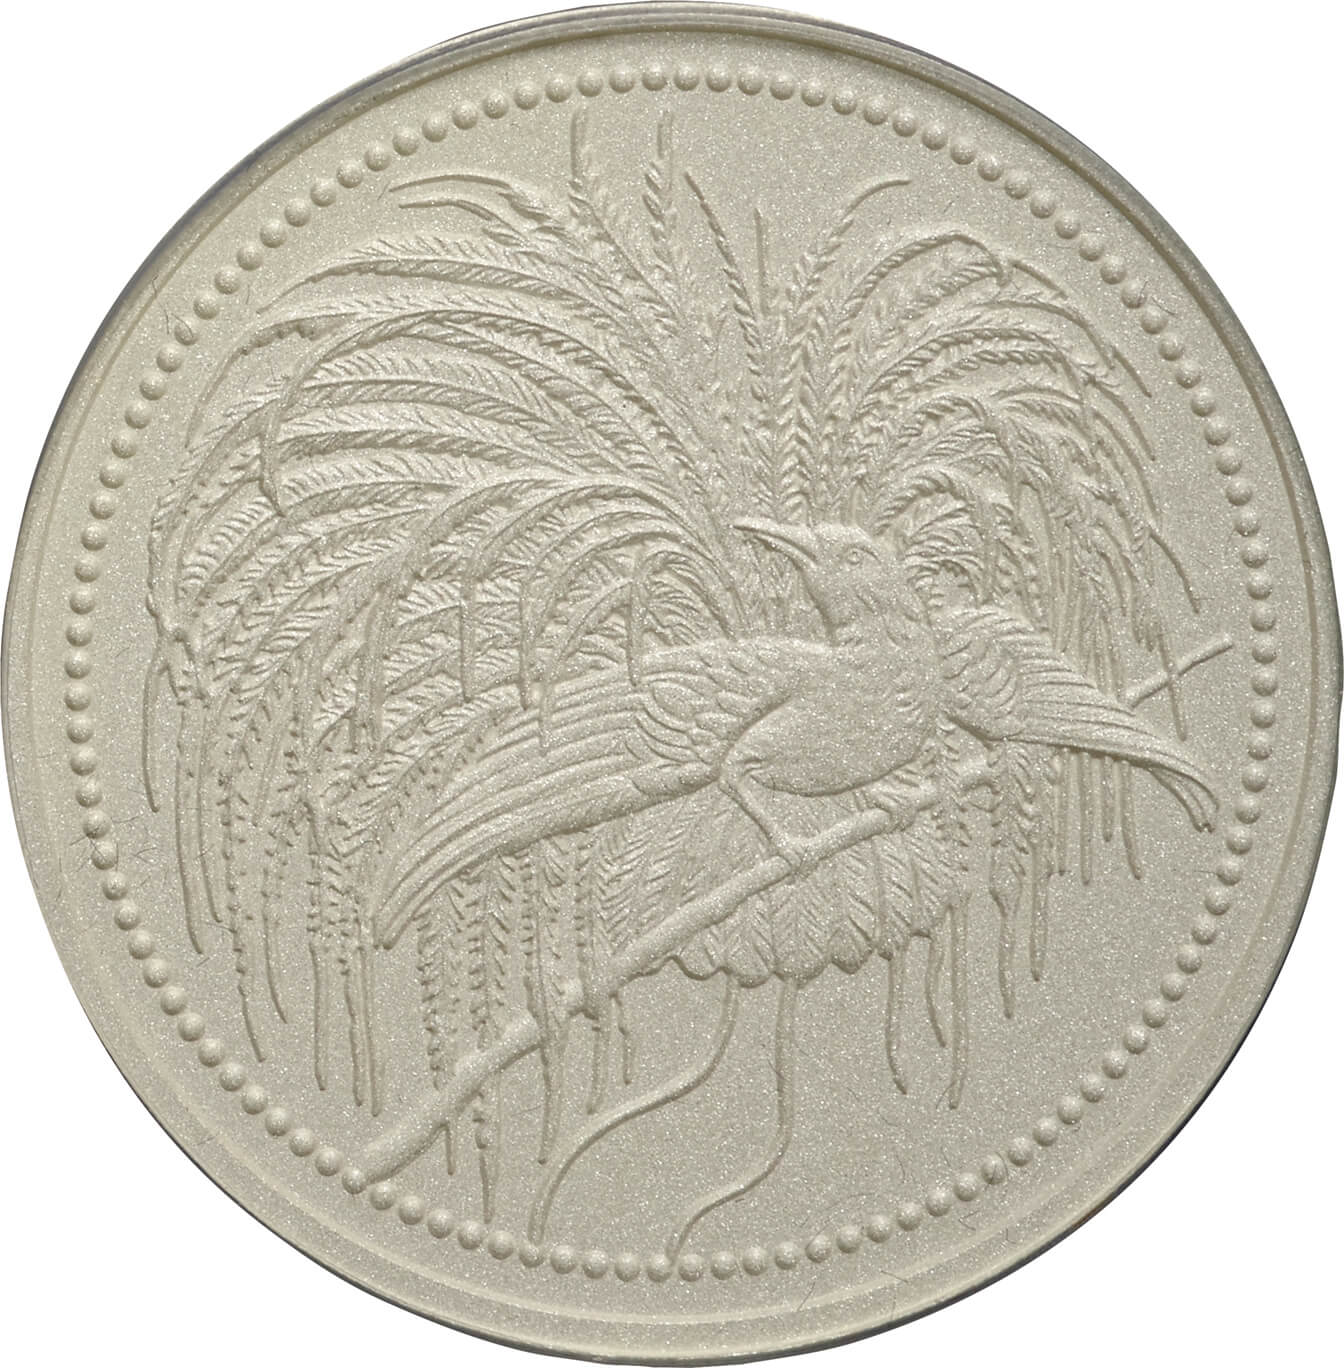 2020年 パプアニューギニア 極楽鳥 2オンス プルーフ銀貨 PR70 FDI43854264